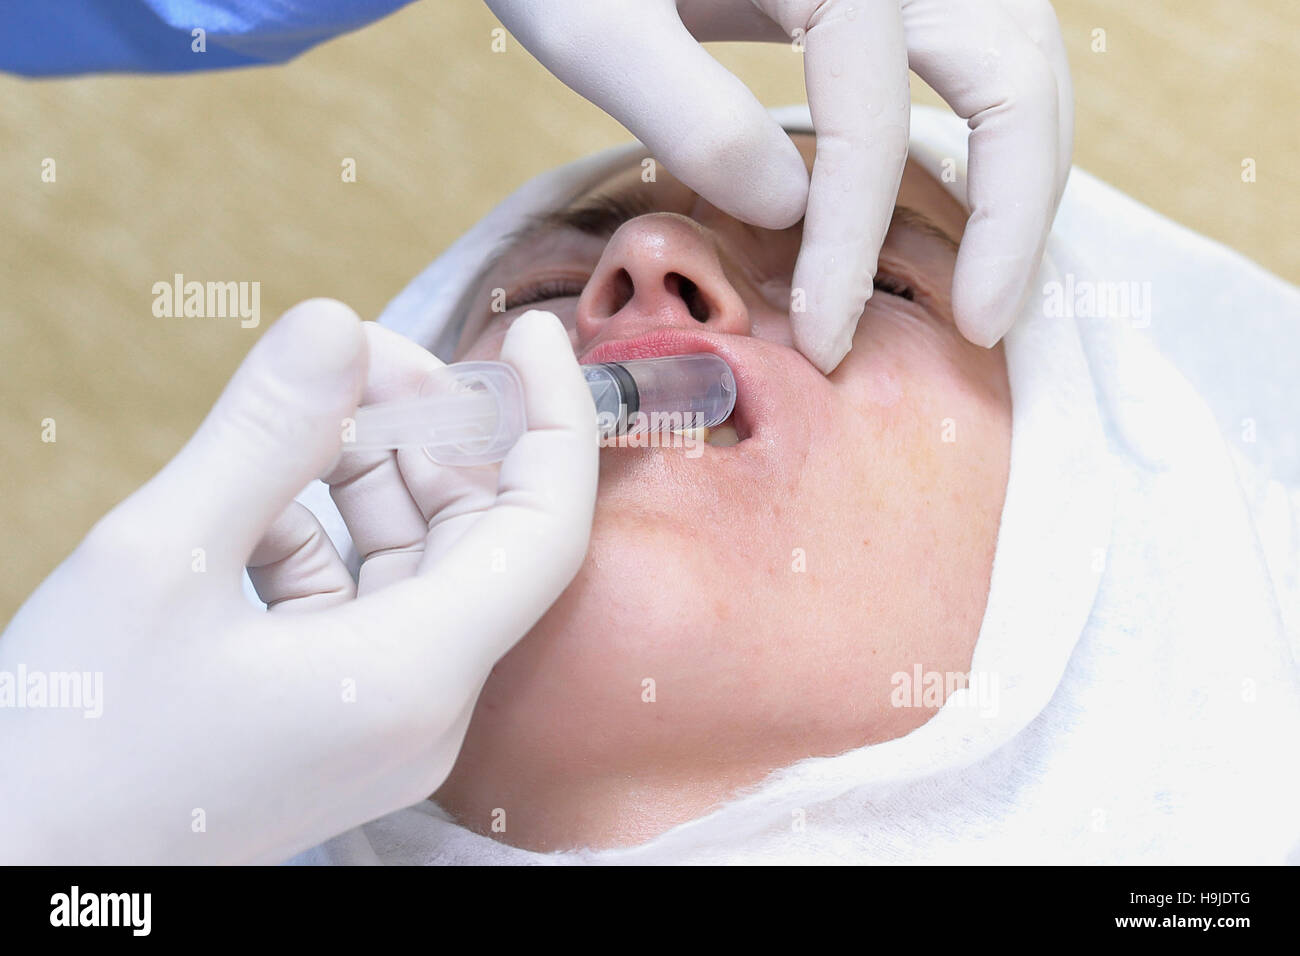 Femme se bouche en injection anesthésique Banque D'Images